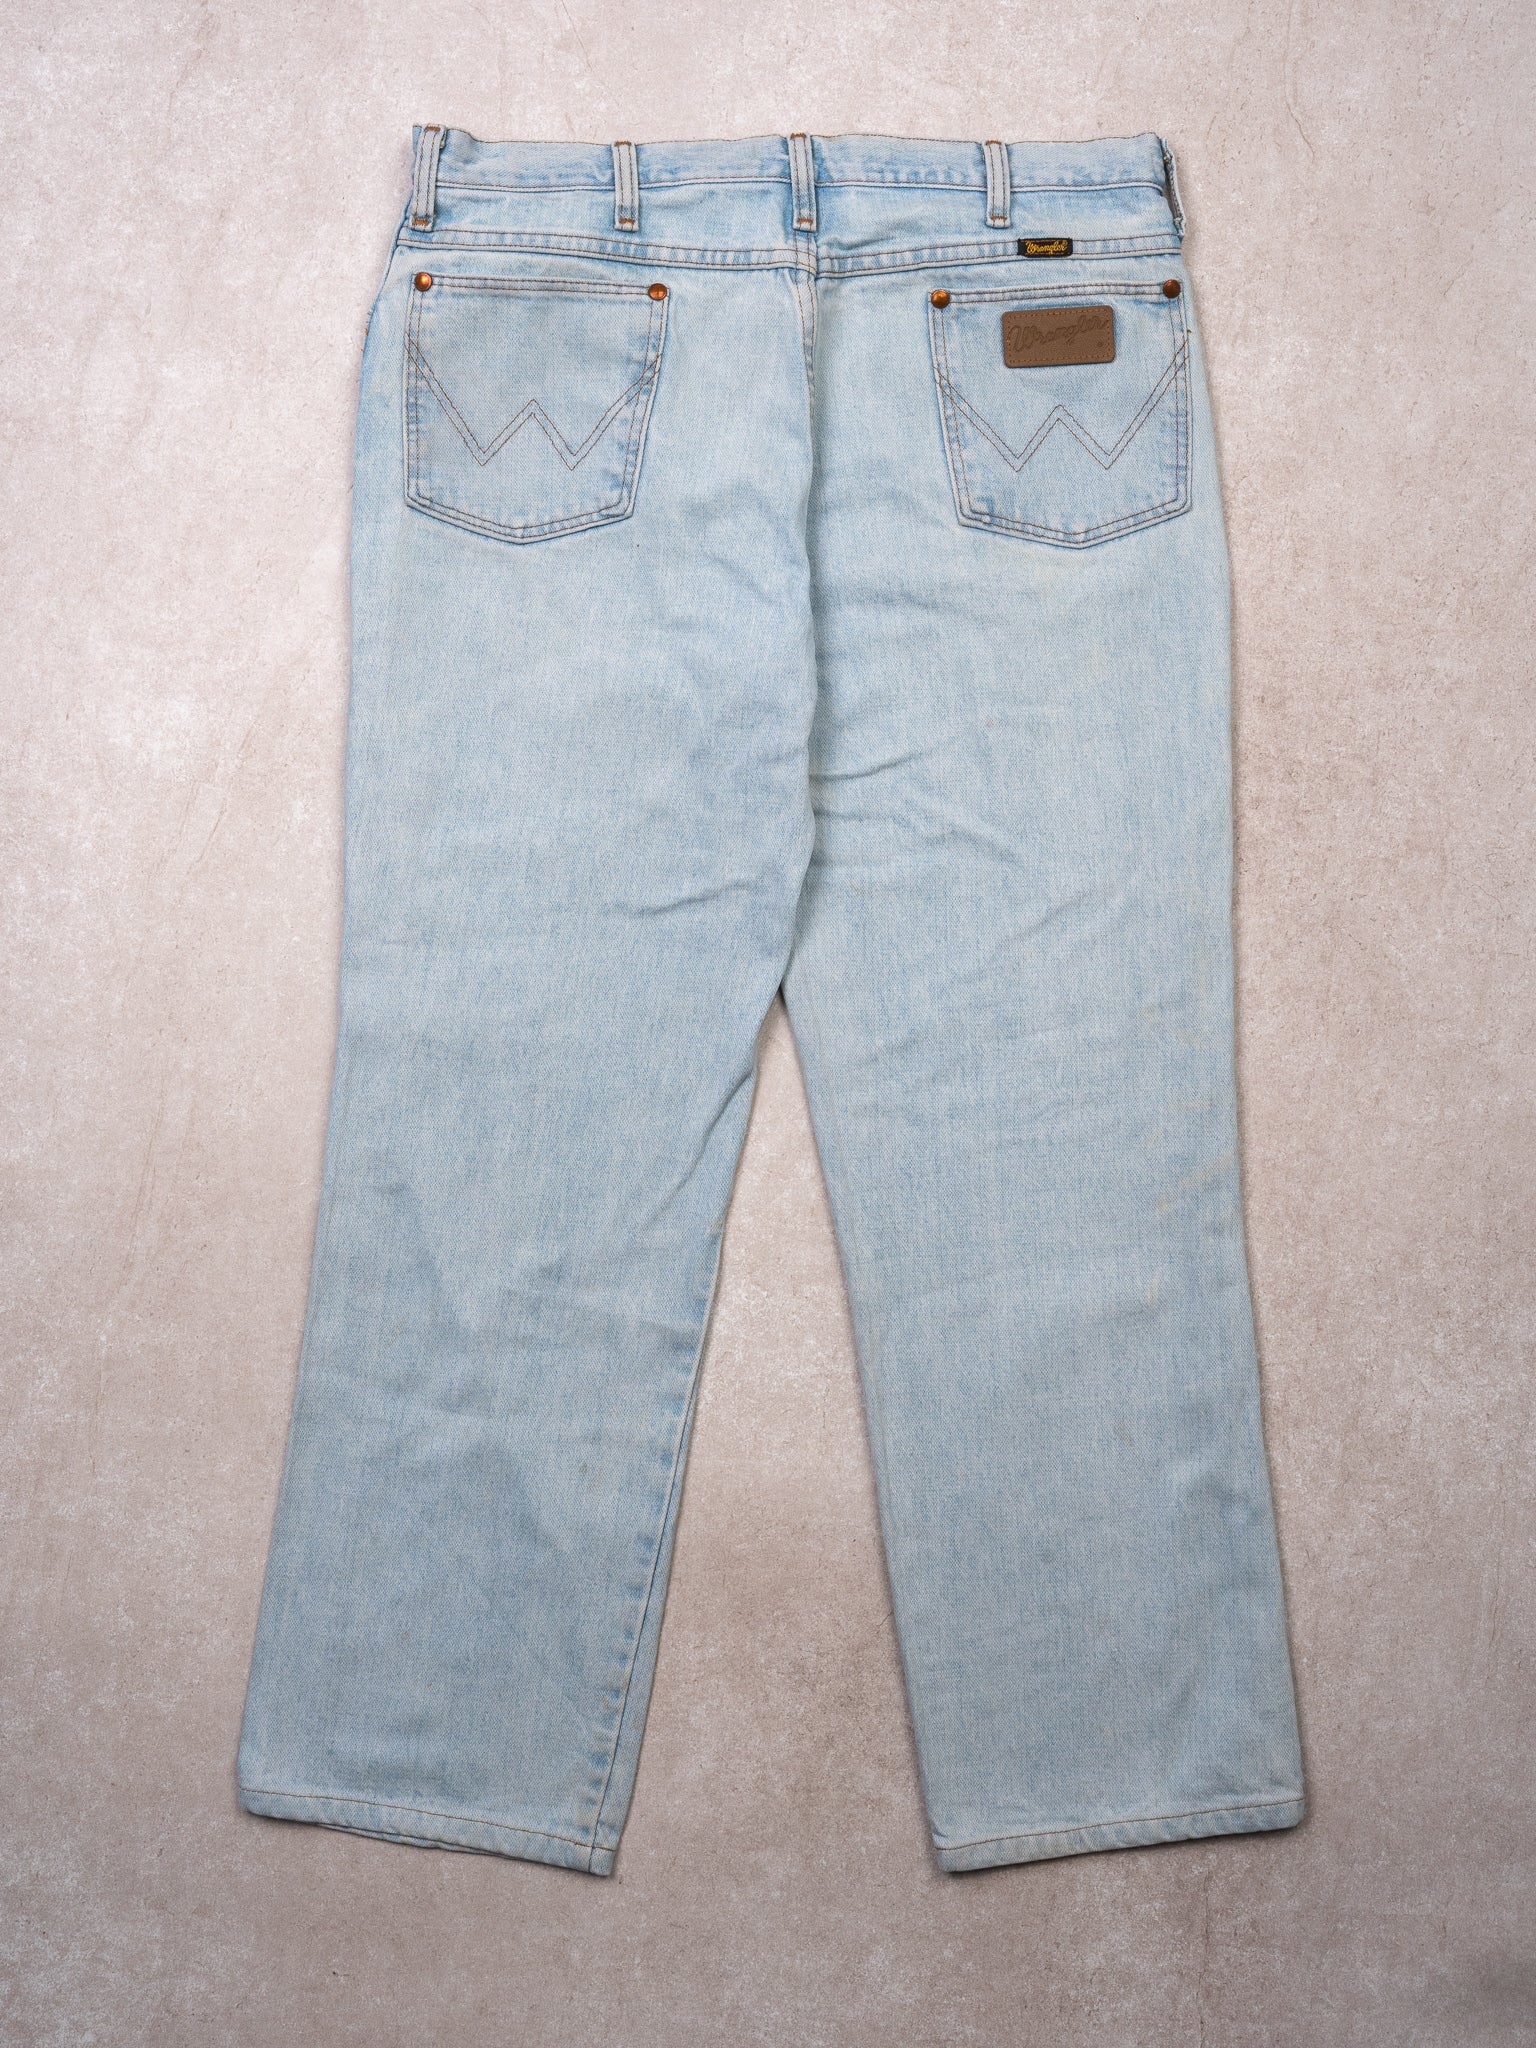 Vintage 80s Light Blue Wrangler Jeans 35 X 28 Rebalance Vintage 0465